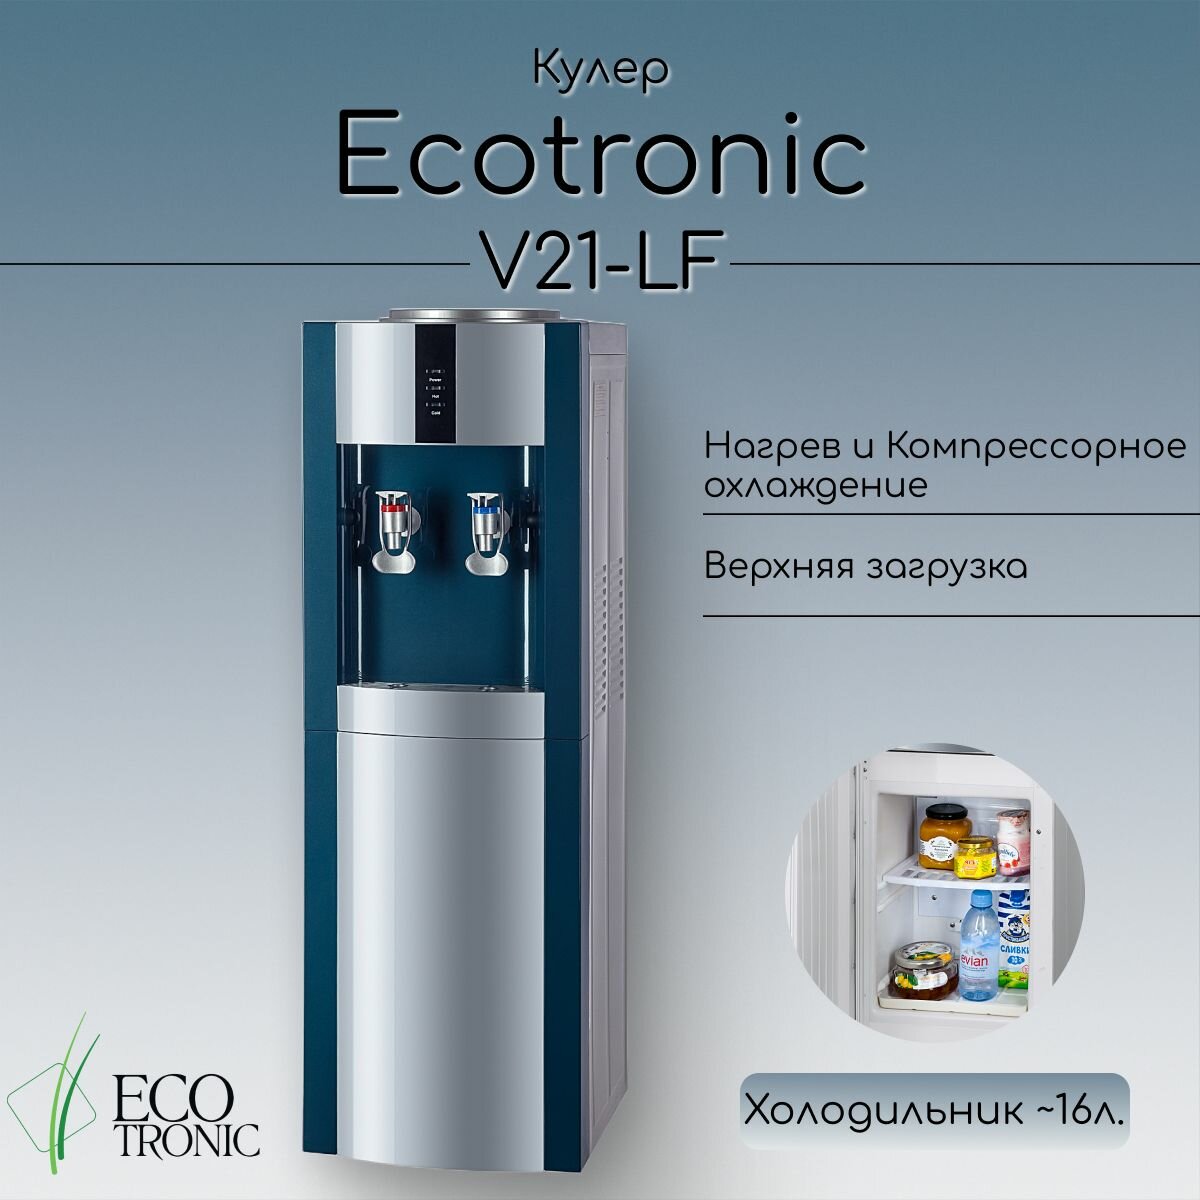 Кулер Экочип V21-LF green+silver с холодильником